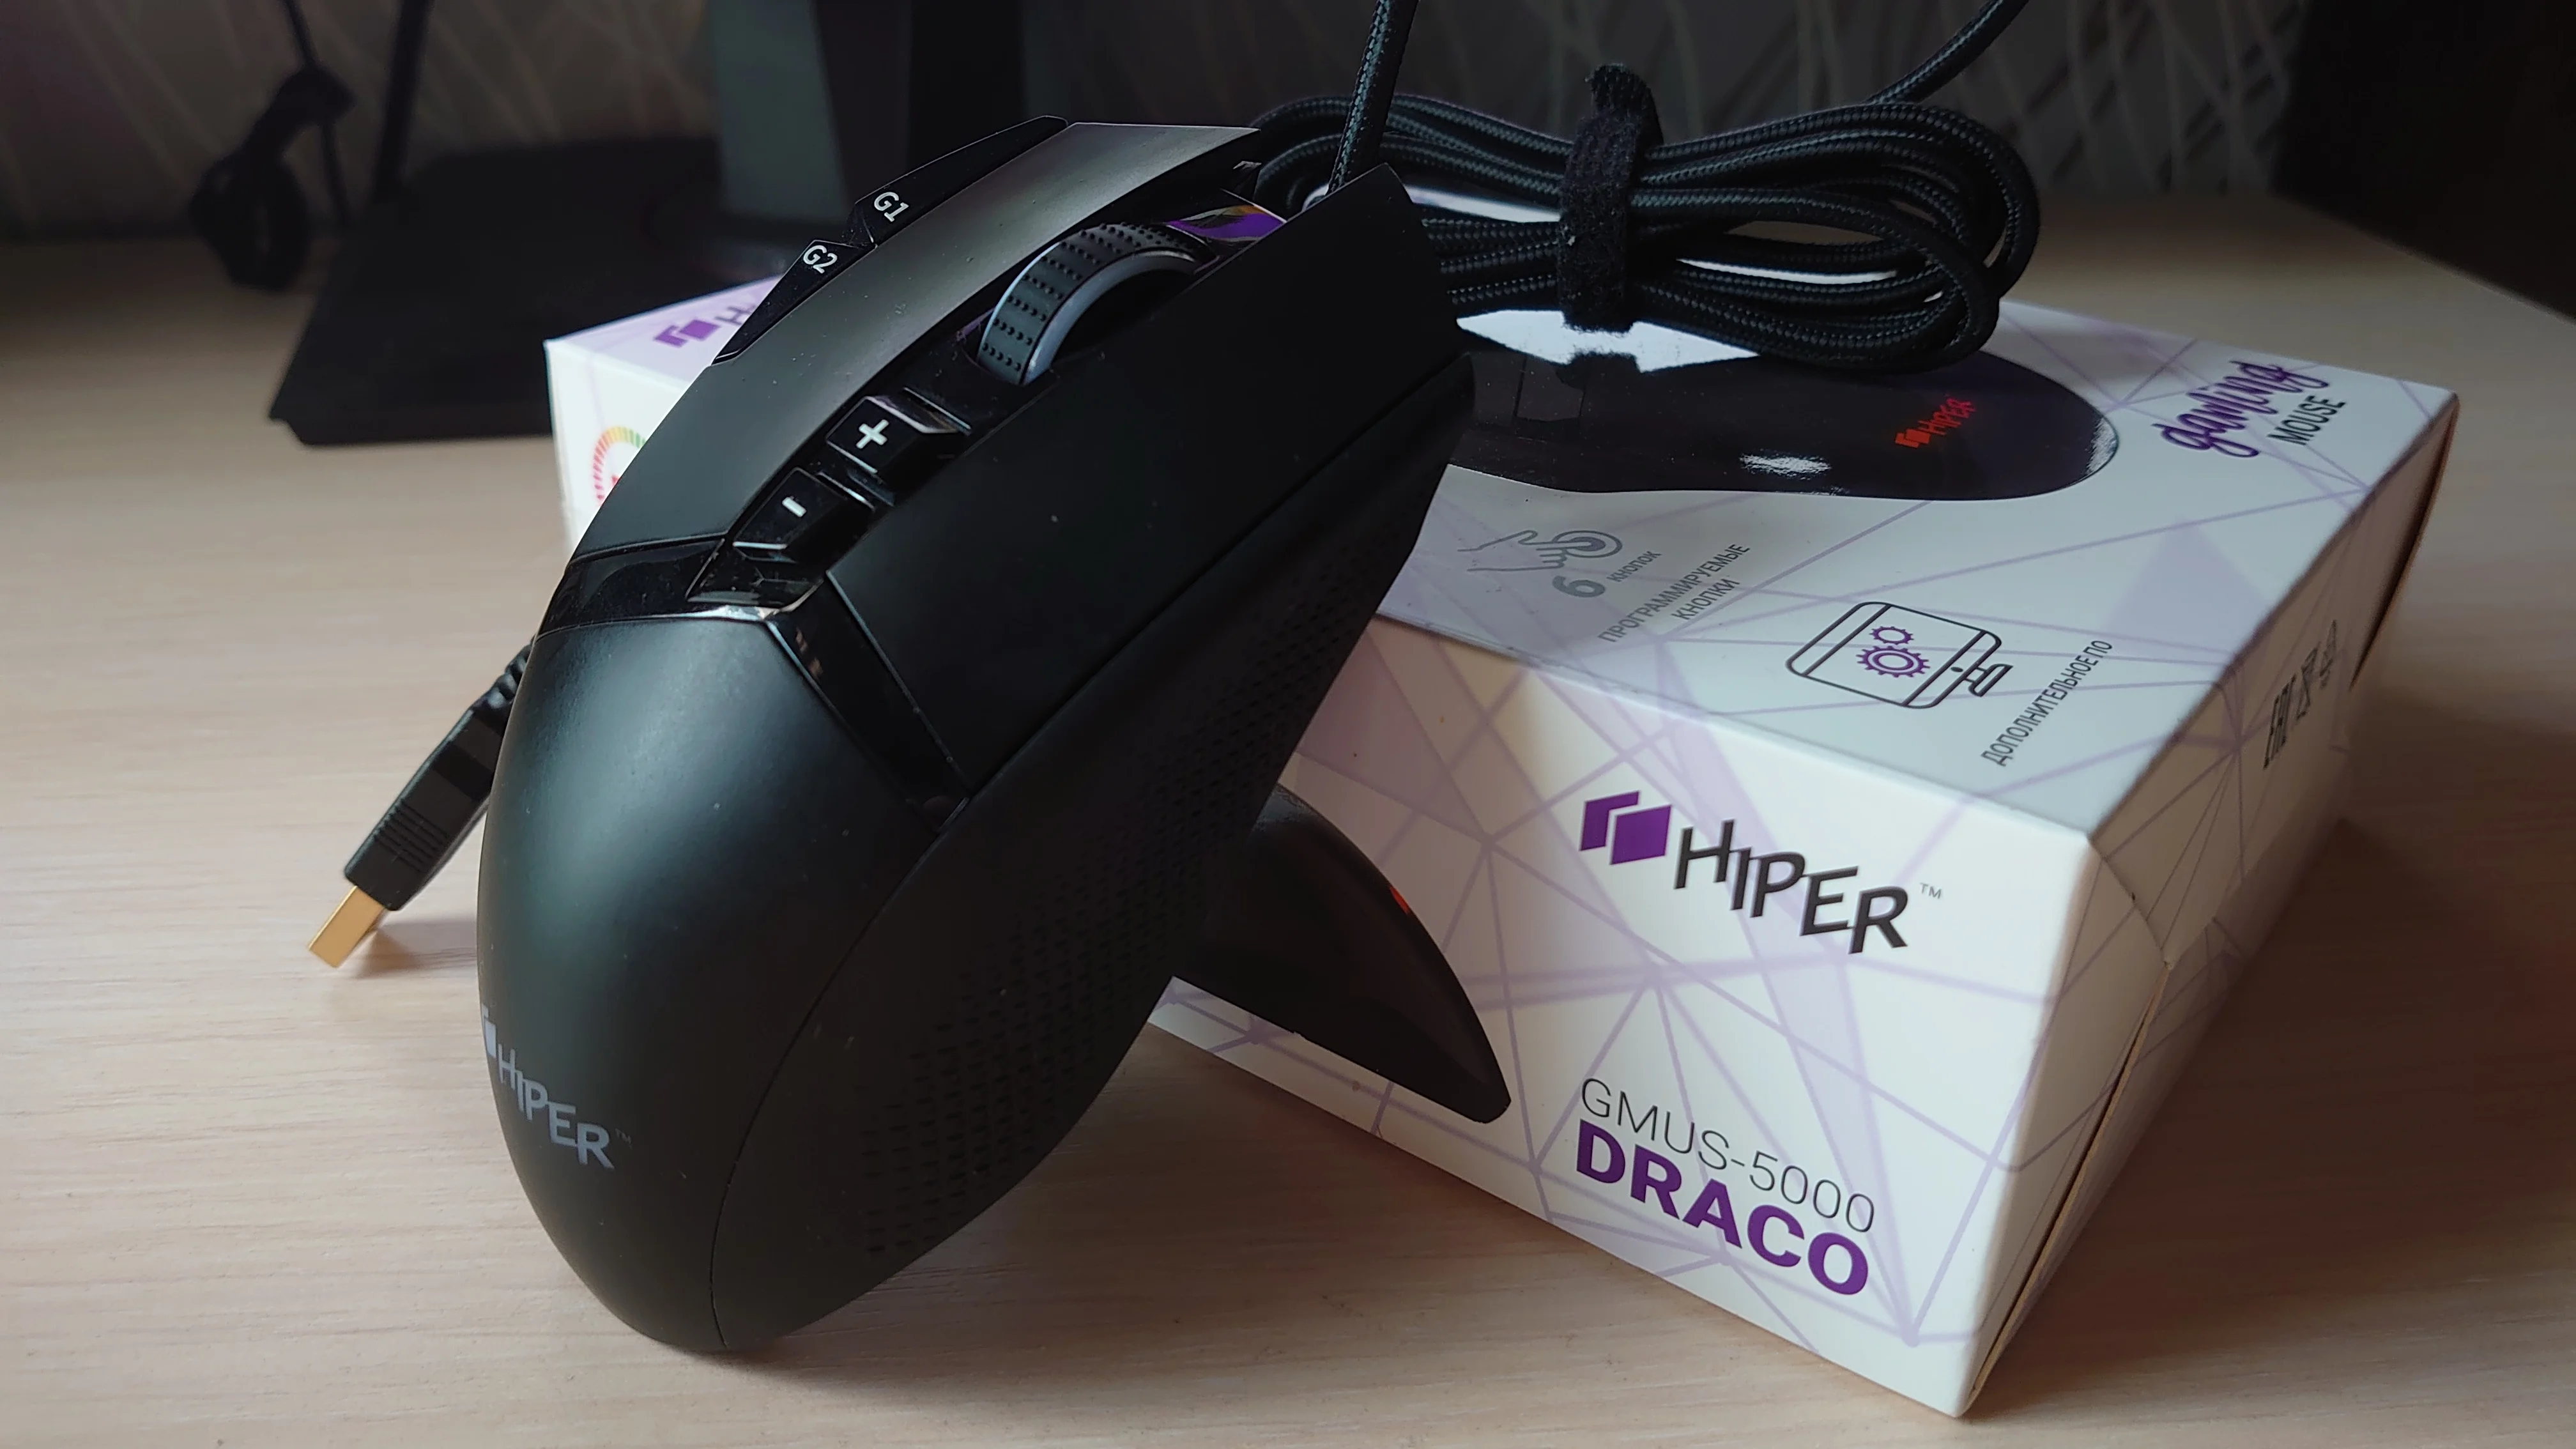 Обзор Hiper Draco: что может бюджетная игровая мышка